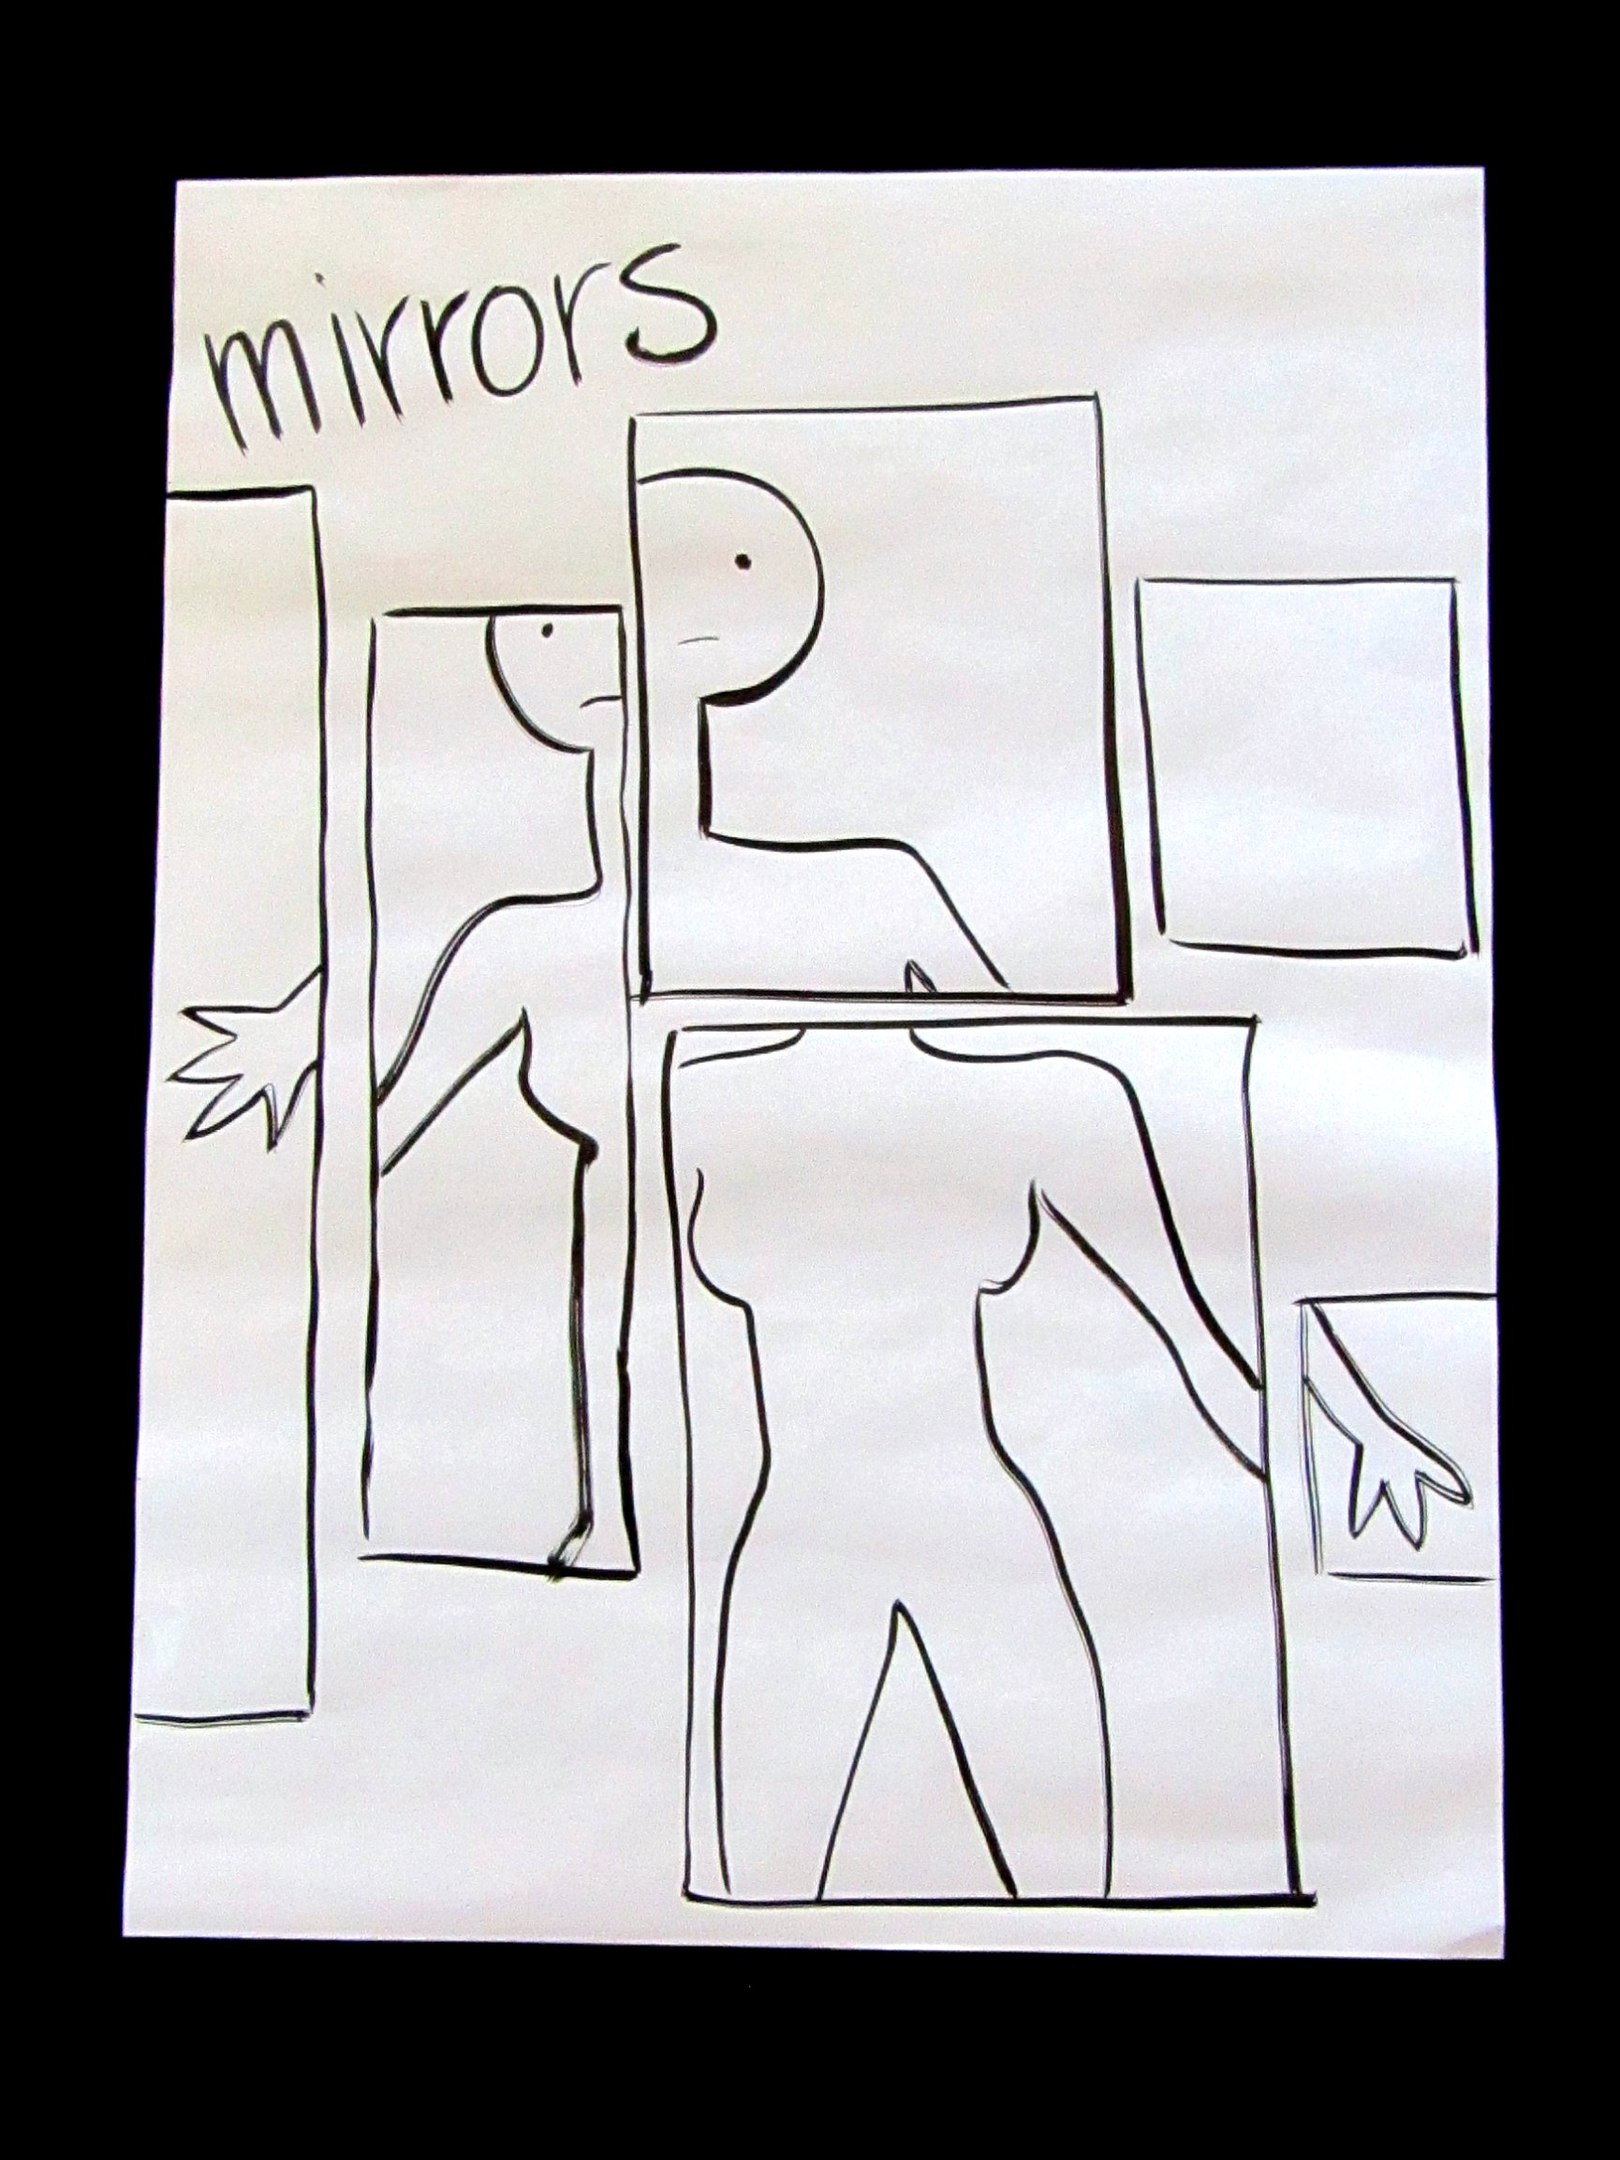 На&nbsp;картинке изображен черный фон. На&nbsp;нем лежит белый лист бумаги. На&nbsp;нём графически изображена фигура женщины. Разные её части тела отражаются в&nbsp;прямоугольных зеркалах. Если смотреть слева направо, то: в&nbsp;первом зеркале отражаются кисть её руки; во&nbsp;втором зеркале&nbsp;— часть лица, шеи, плечо и&nbsp;предплечье, часть груди; в&nbsp;третьем зеркале, расположенном сверху, отражаются другая часть головы с&nbsp;лицом, часть шеи, плечо и&nbsp;часть предплечья; под этим зеркалом четвёртое зеркало с&nbsp;отражением плечей, груди, туловища и&nbsp;верхней части ног; в&nbsp;пятом зеркале, расположенном сверху, нет отражения; в&nbsp;шестом зеркале, расположенном под ним, отражаются часть руки и&nbsp;кисть. В&nbsp;верхнем углу картины черным цветом написано слово “mirrors”, в&nbsp;переводе с&nbsp;английского «зеркала». Авторка картины&nbsp;— Юлия Цветкова.